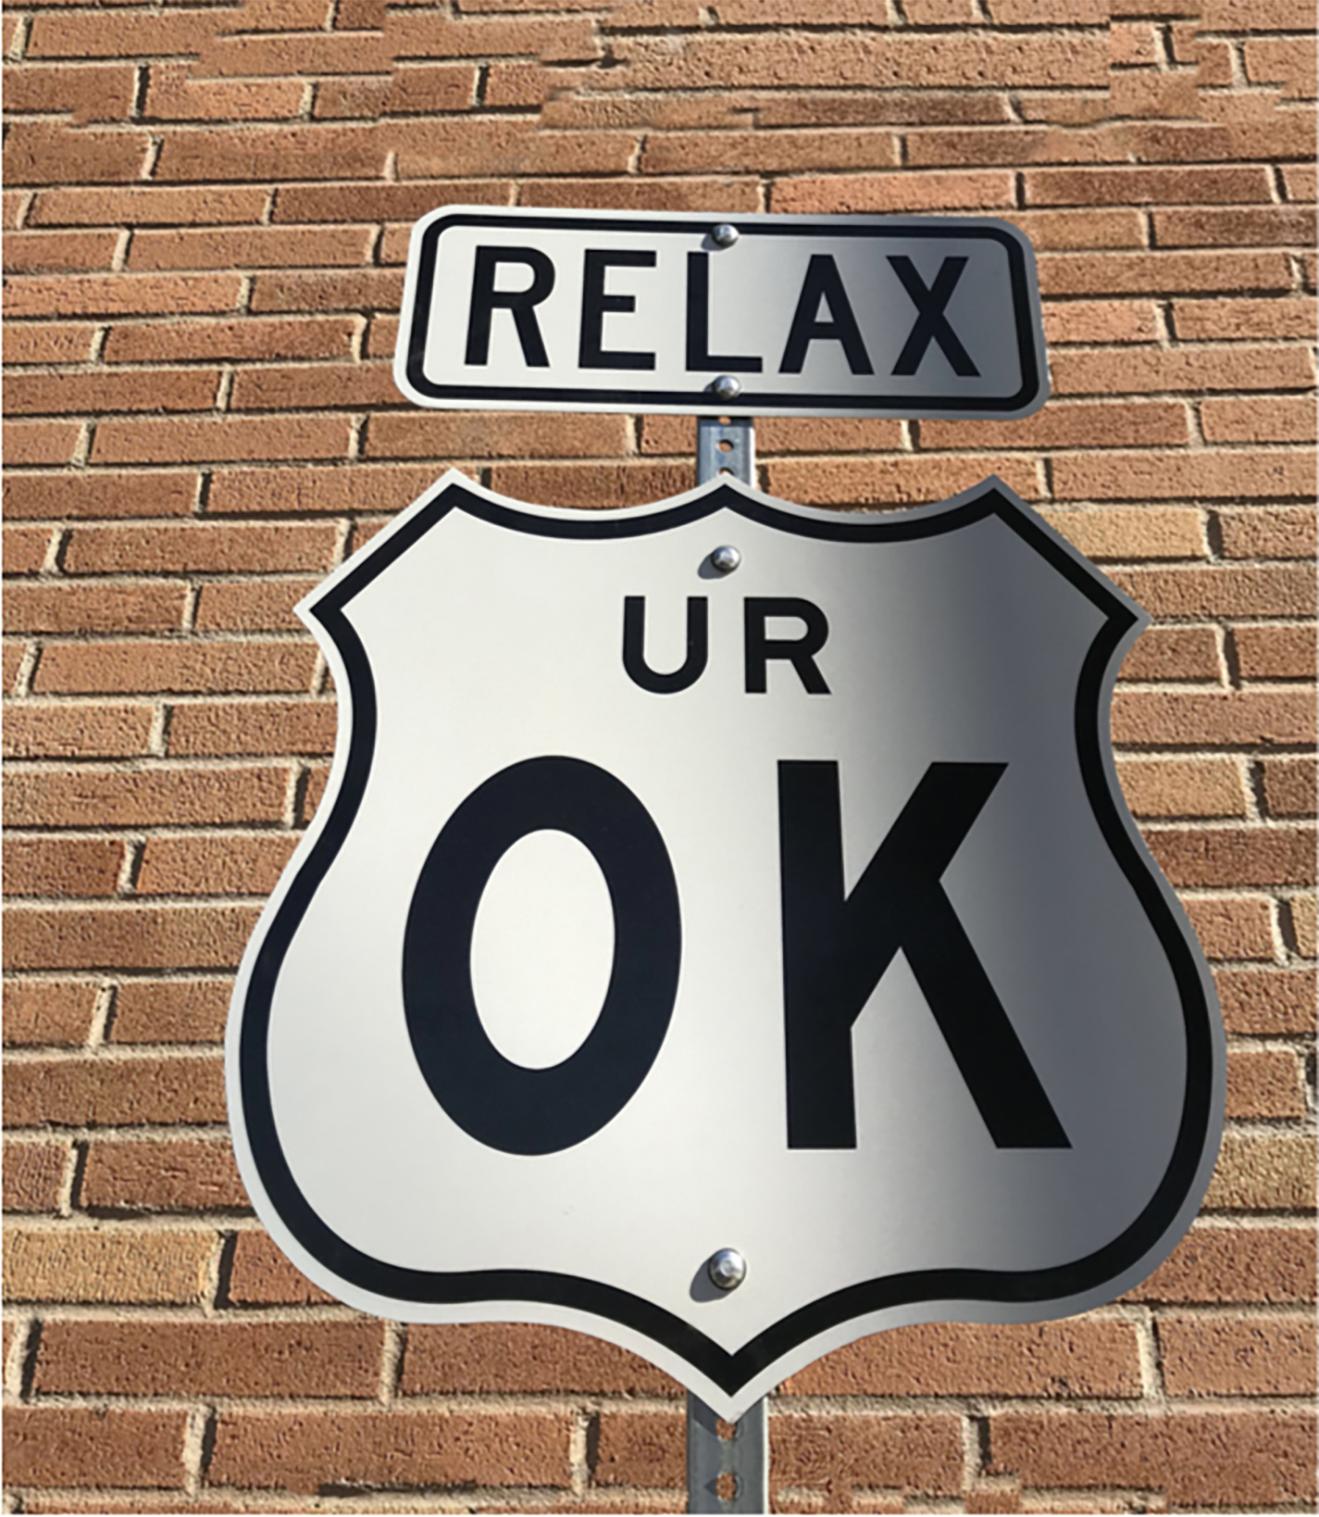 "Relax UR OK" -Contemporary Street Sign Sculpture - Mixed Media Art by Scott Froschauer